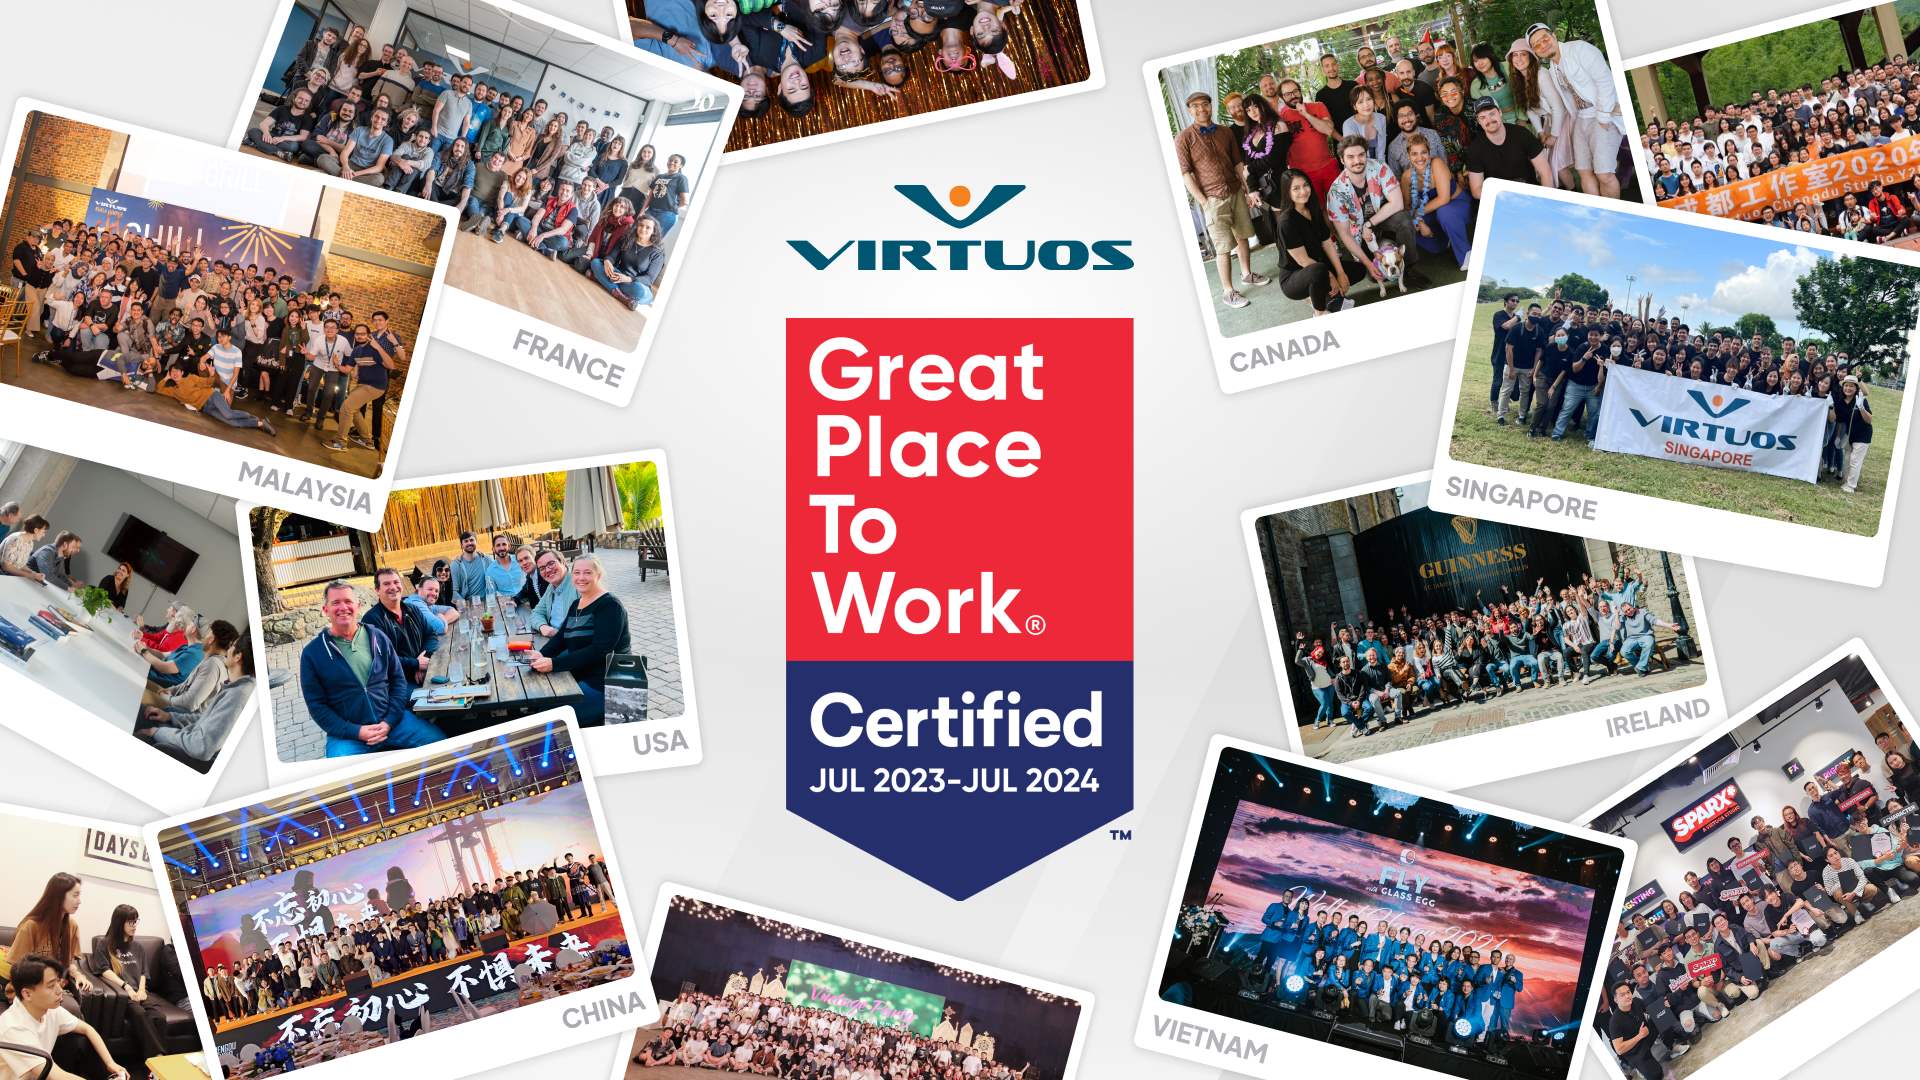 Virtuos được chứng nhận là nơi làm việc xuất sắc bởi Viện Great Place to Work™ tại tám quốc gia